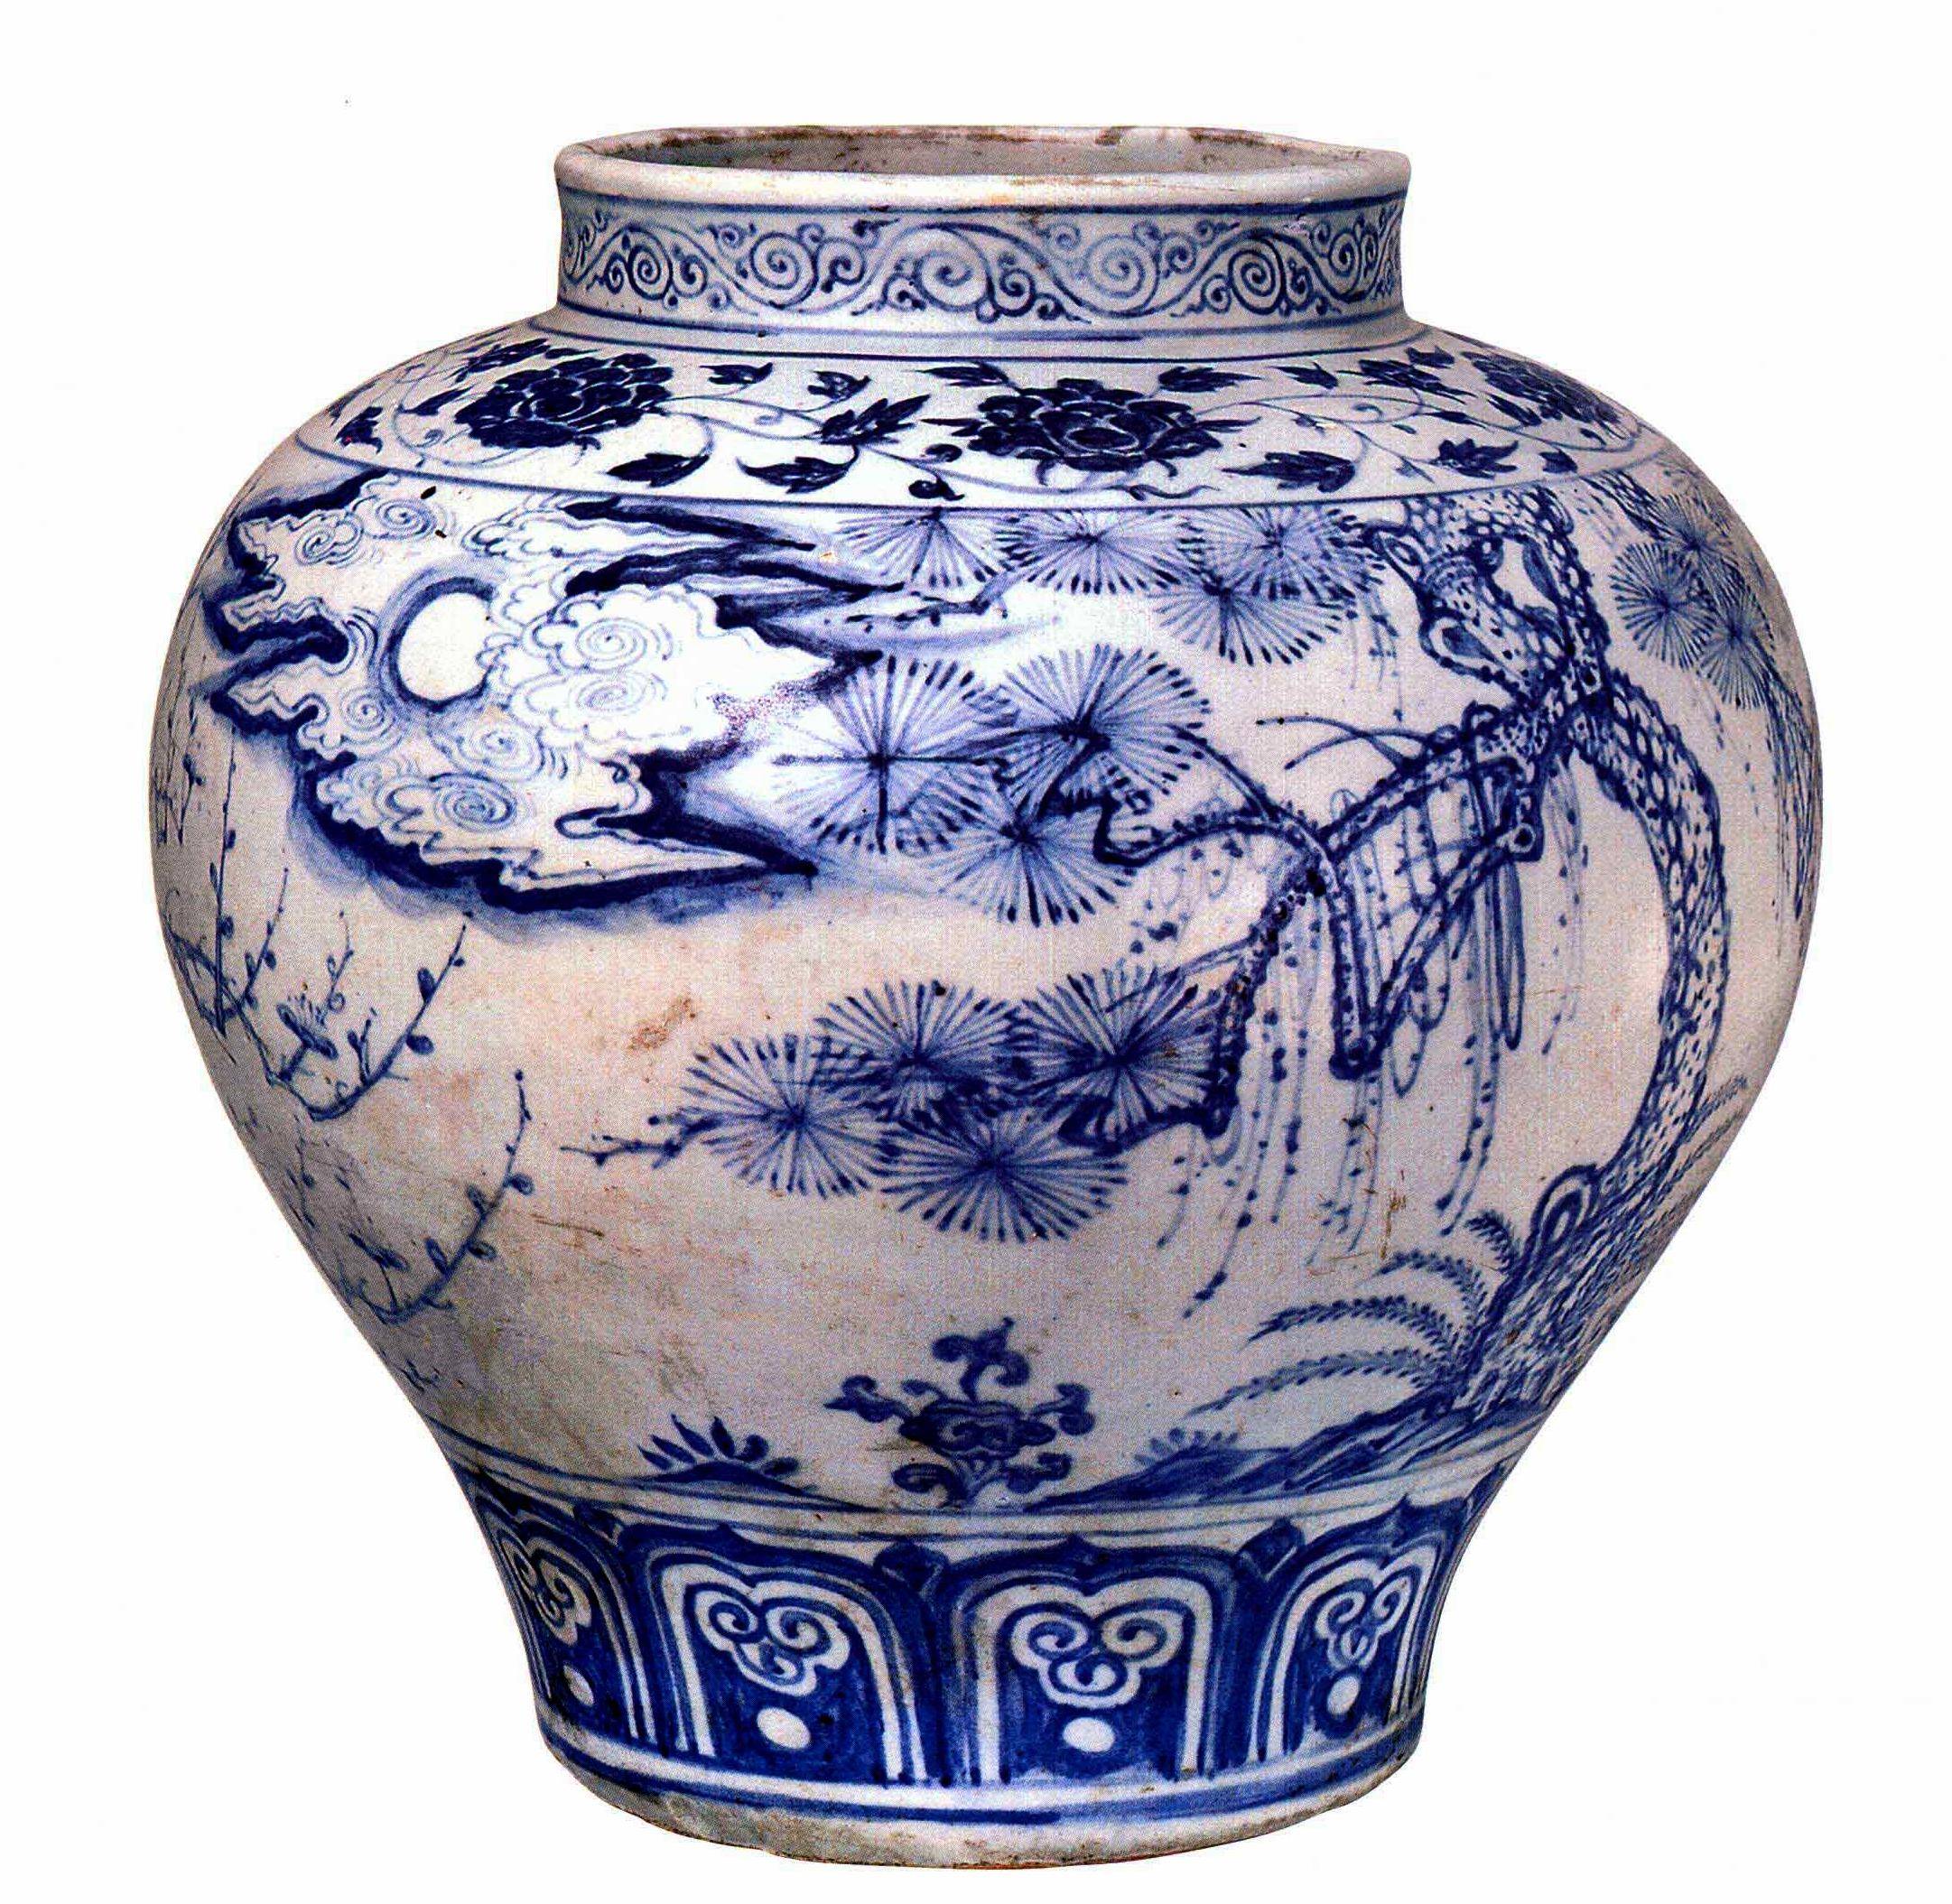 原创中国陶瓷文化,色泽温润纯正的酱釉盘和绘有特殊流云纹的梅瓶